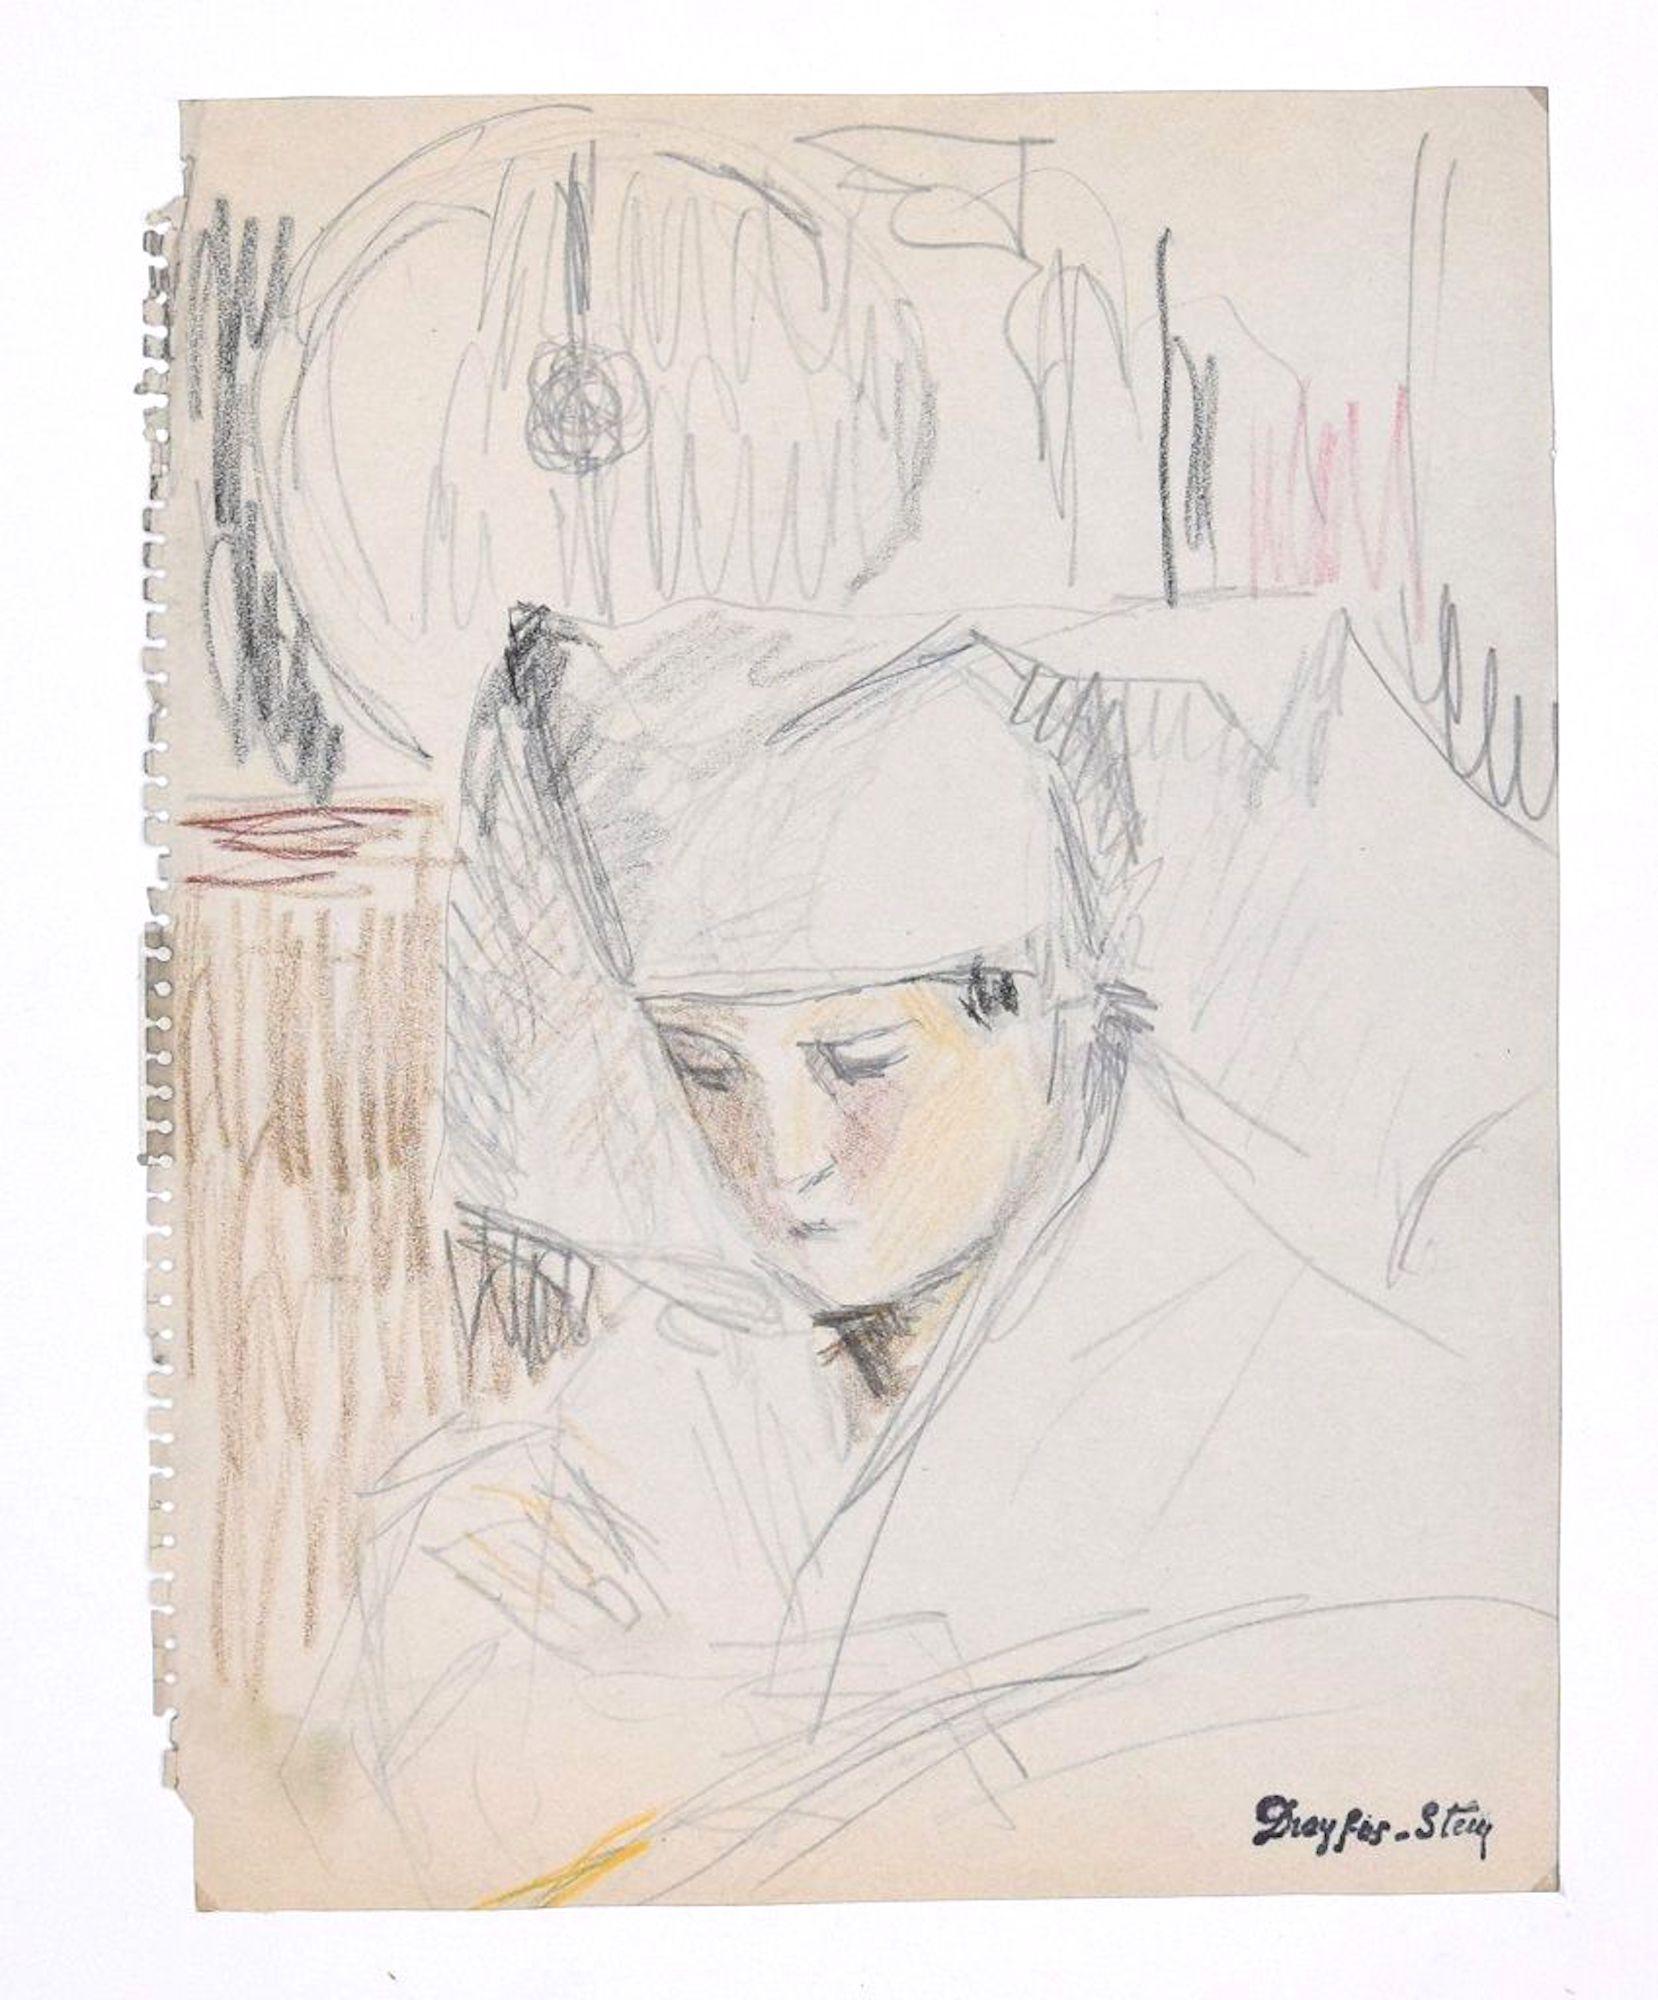 Portrait of Boy - Pencil and Pastel on Paper by J. Dreyfus-Stern  - Art by Jean Dreyfus-Stern